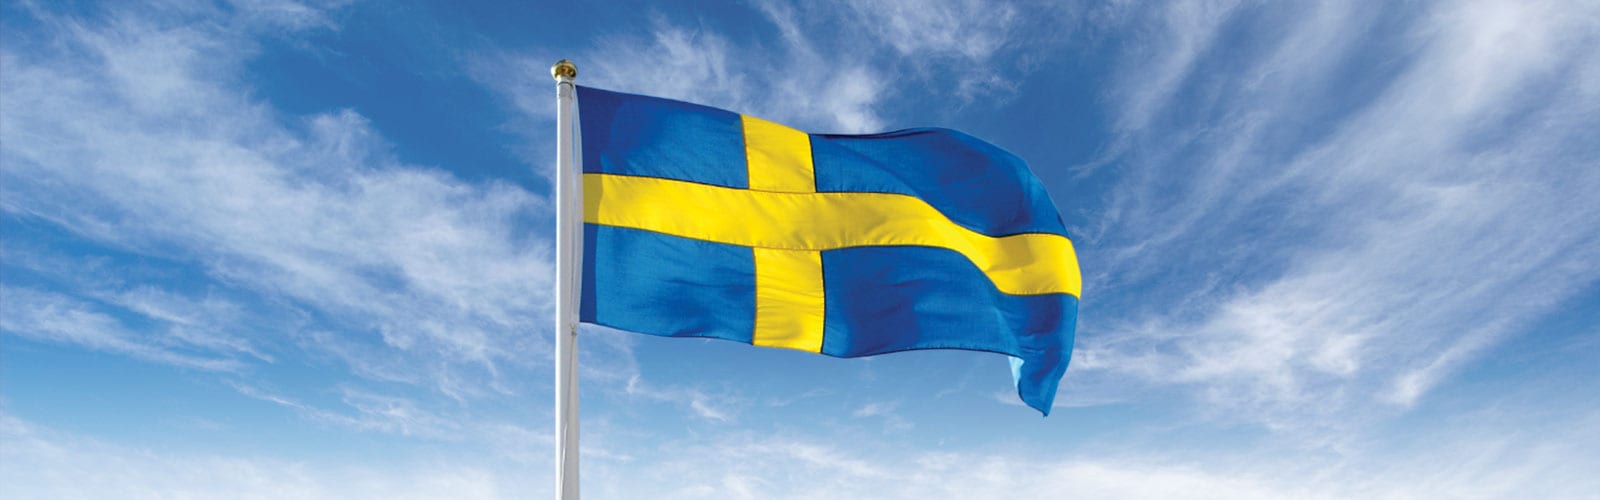 flagga sweden  svensk flagga  flag sweden  sweden flag  sweden flagga  flagga svensk  علم السويد  علم سويد (11)